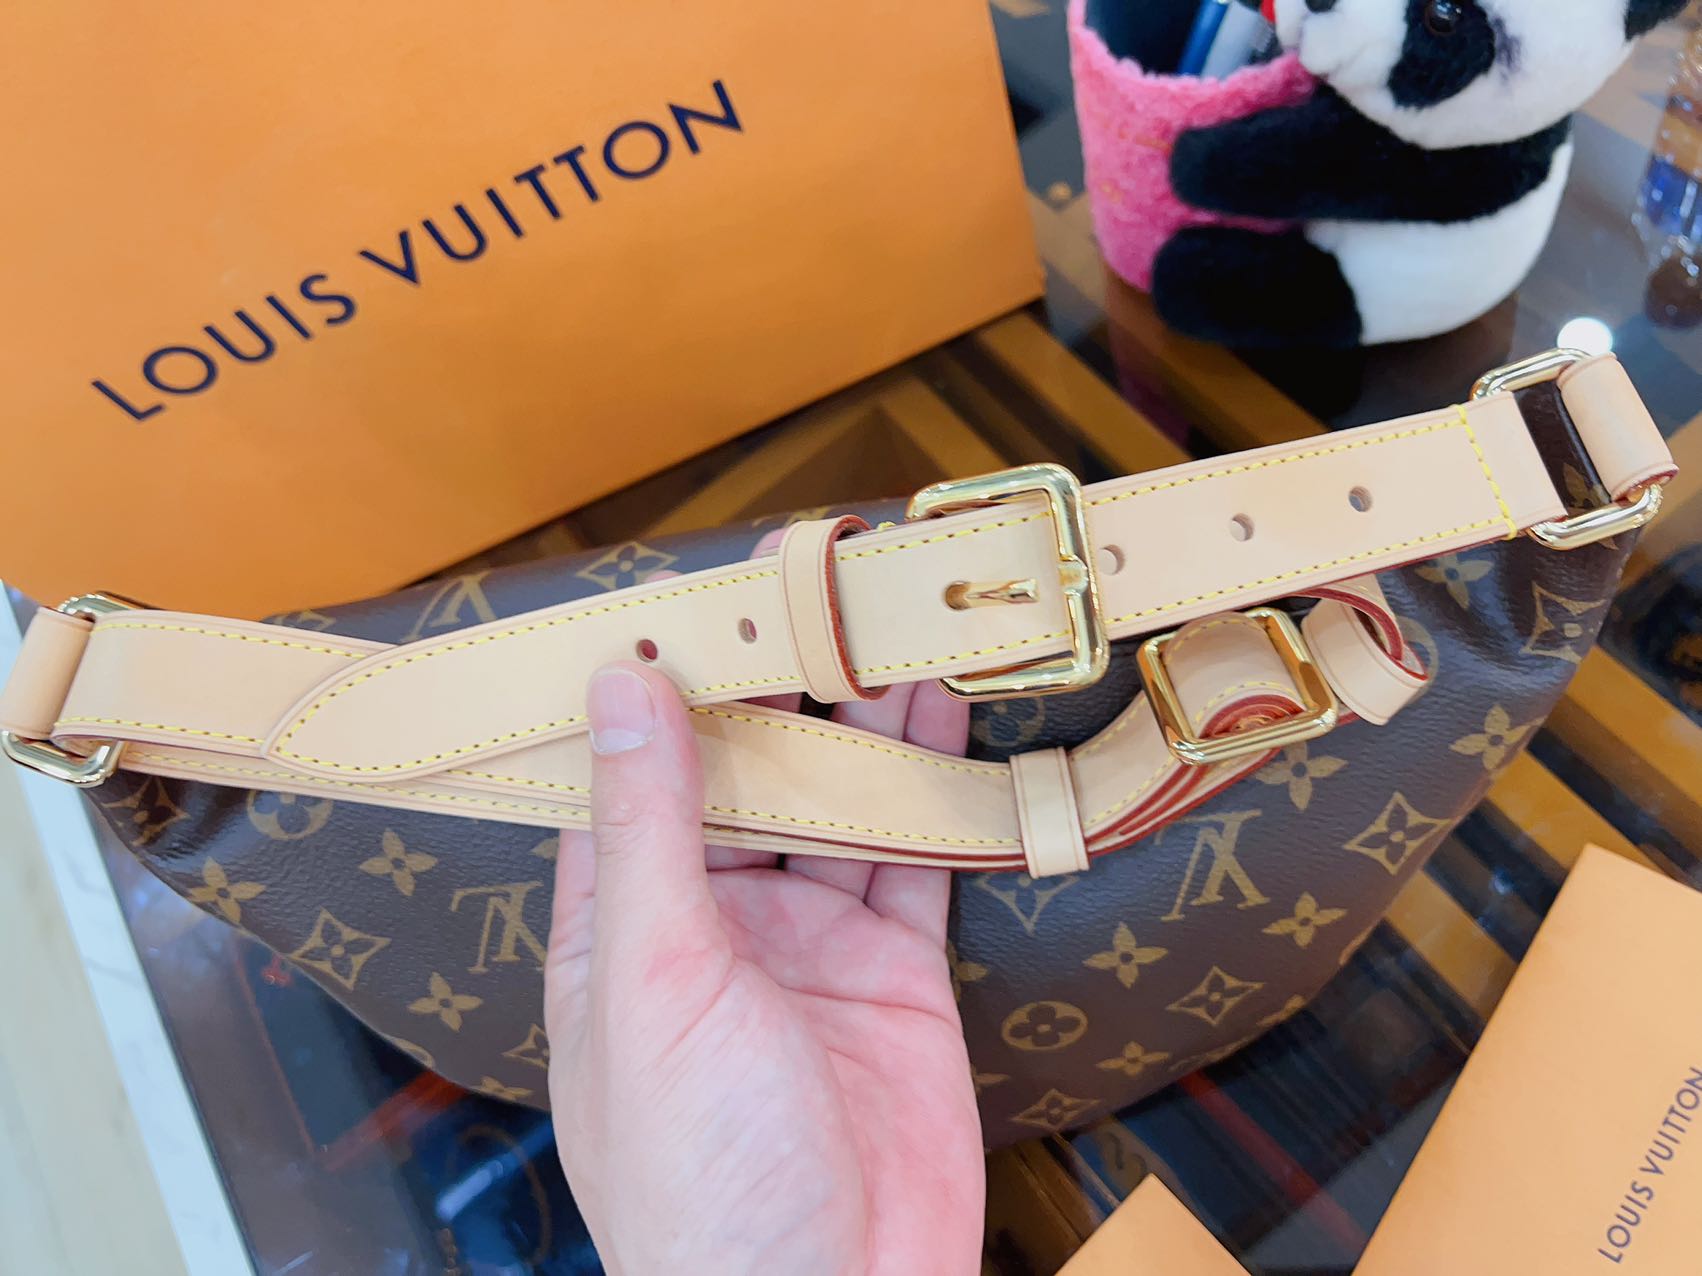 Louis Vuitton Monogram Bum bag - luxhub.ca